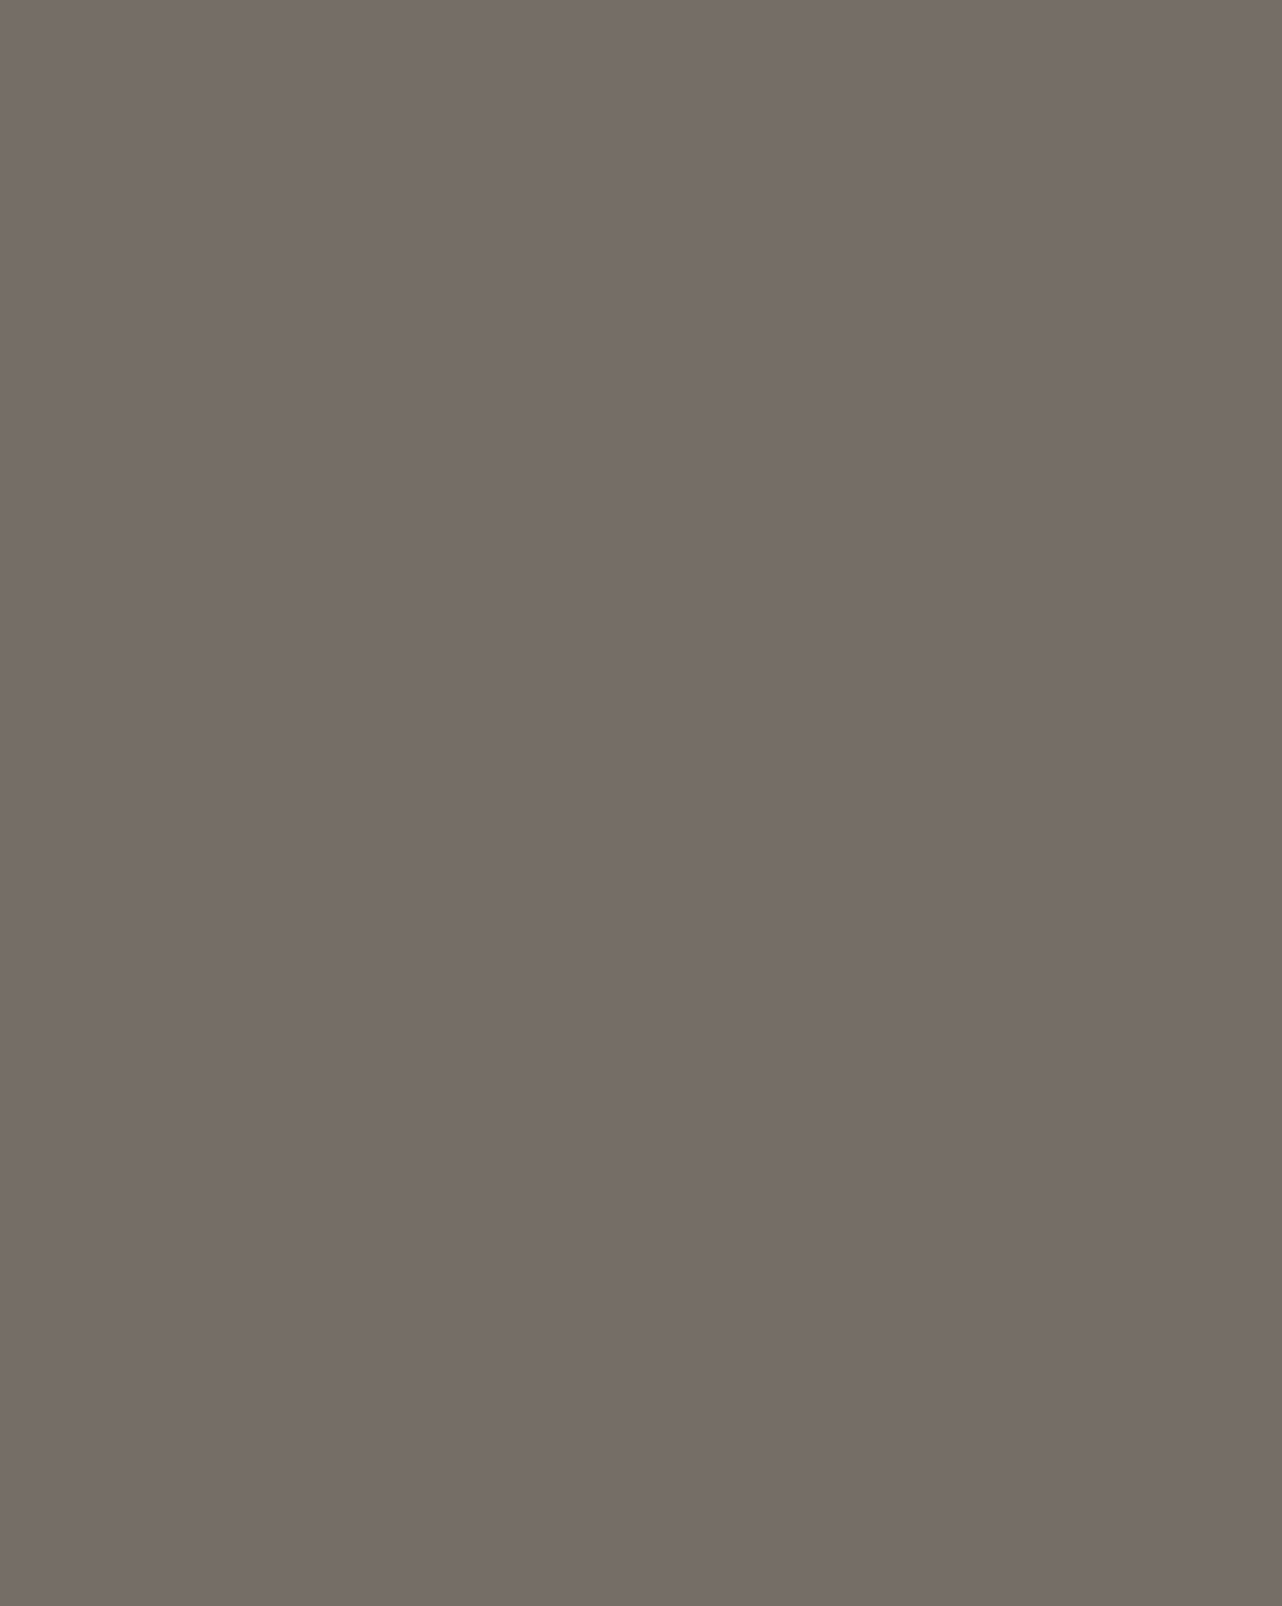 Валентин Серов. Портрет императора Николая II (Портрет Николая II в серой тужурке). 1900-е годы. Государственная Третьяковская галерея, Москва